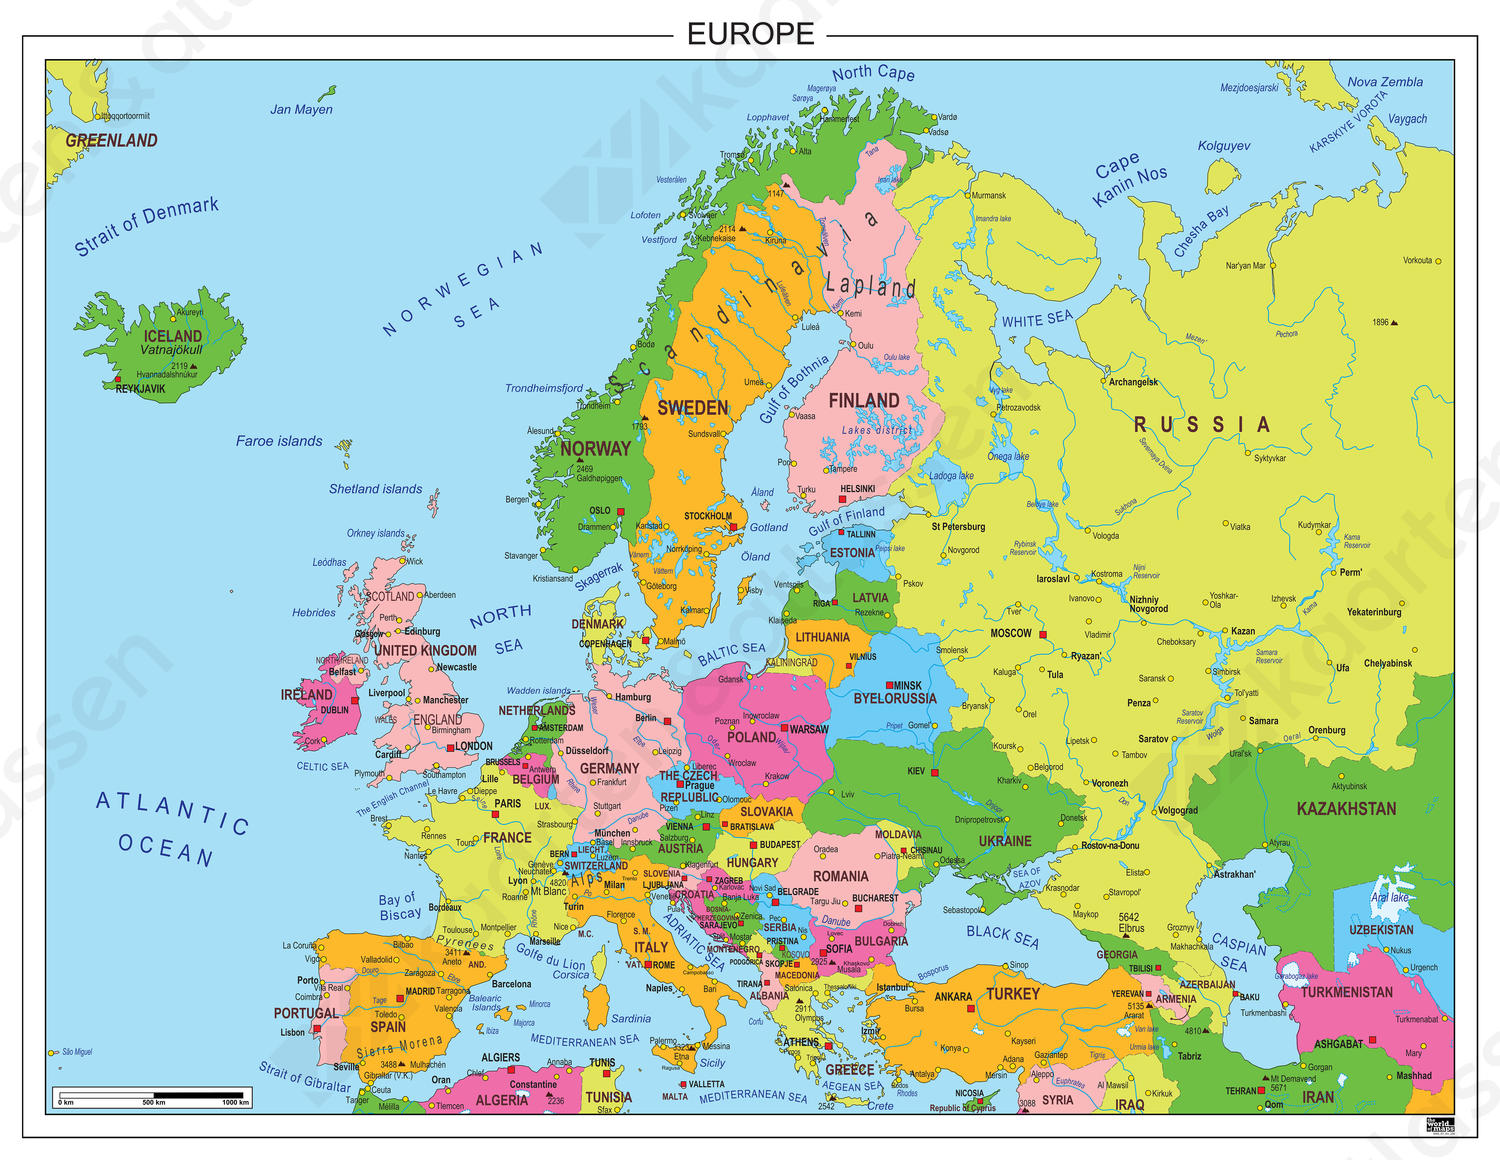 Gewend bezoek rijm Europakaart 234 | Kaarten en Atlassen.nl